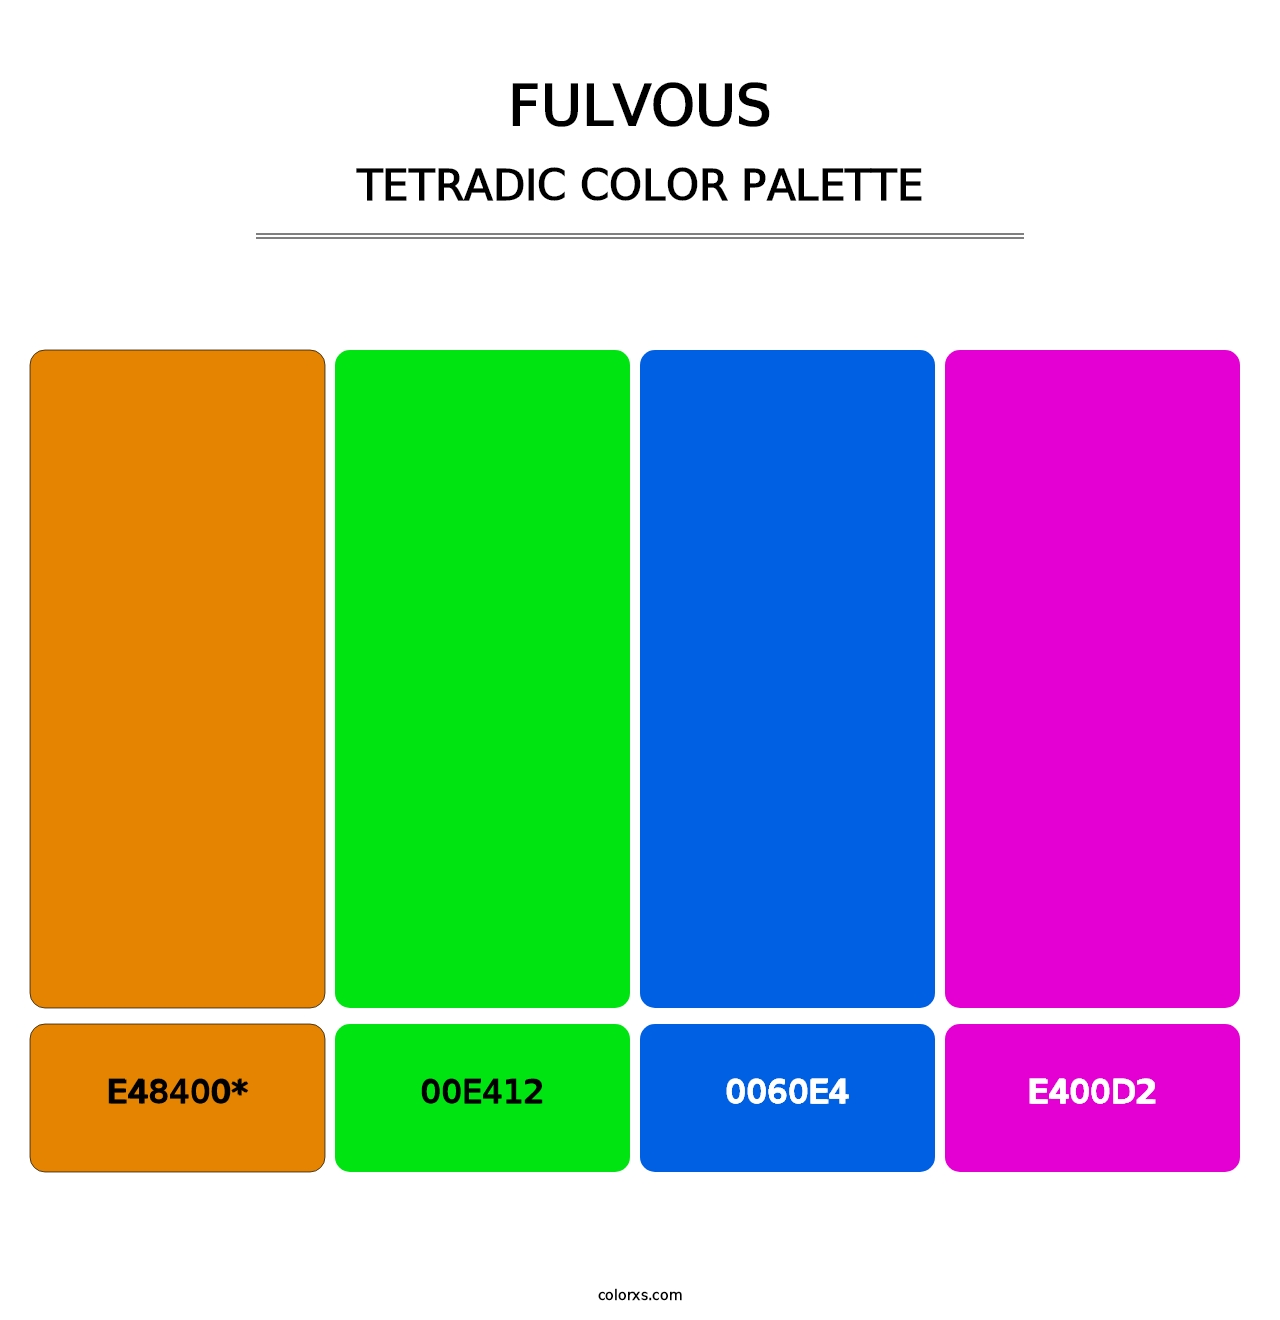 Fulvous - Tetradic Color Palette